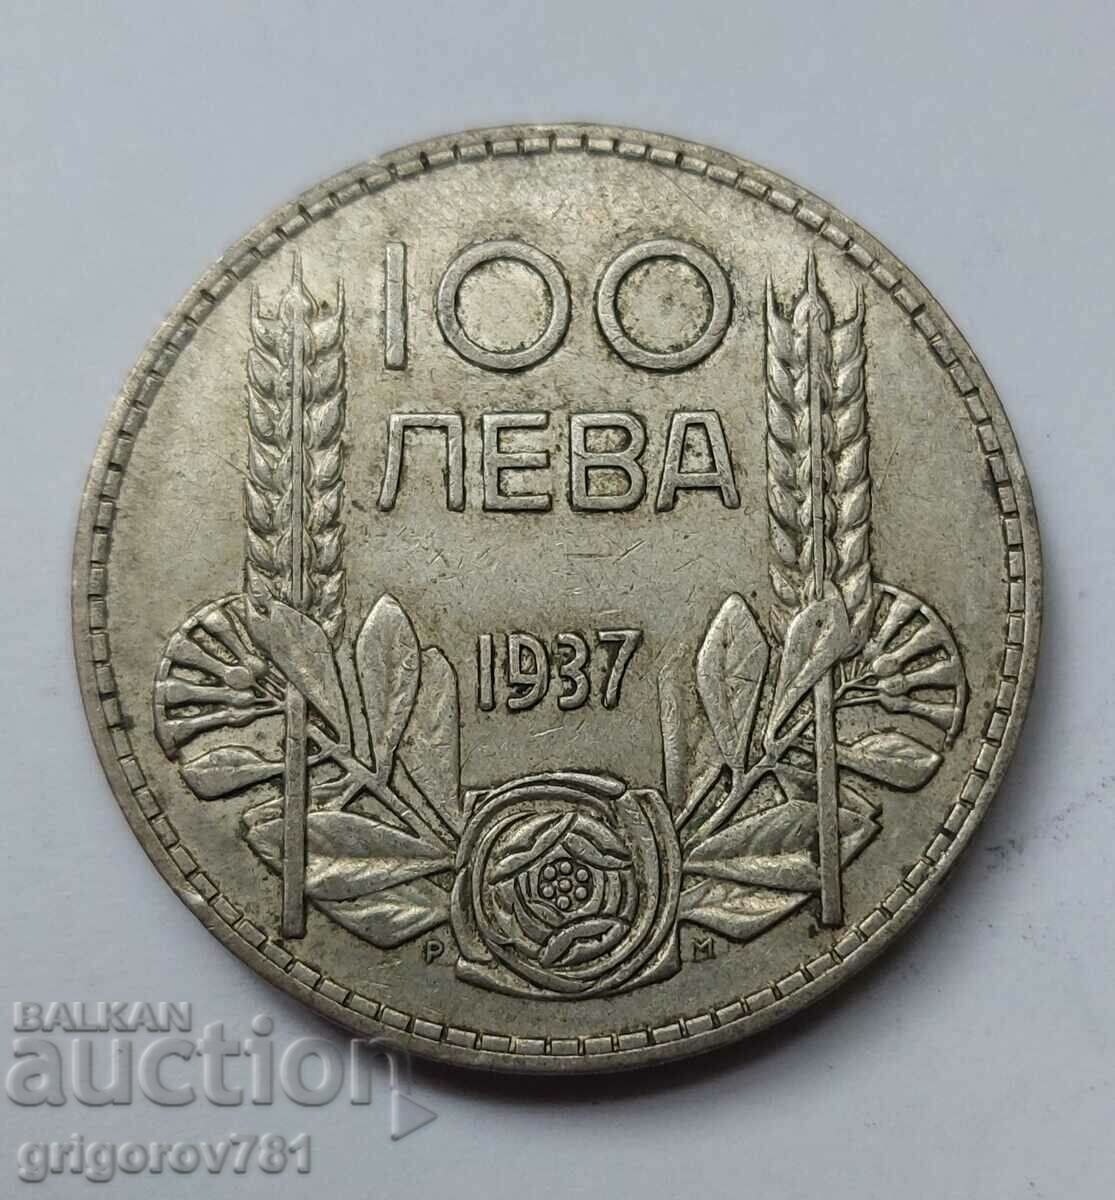 100 leva silver Bulgaria 1937 - silver coin #13